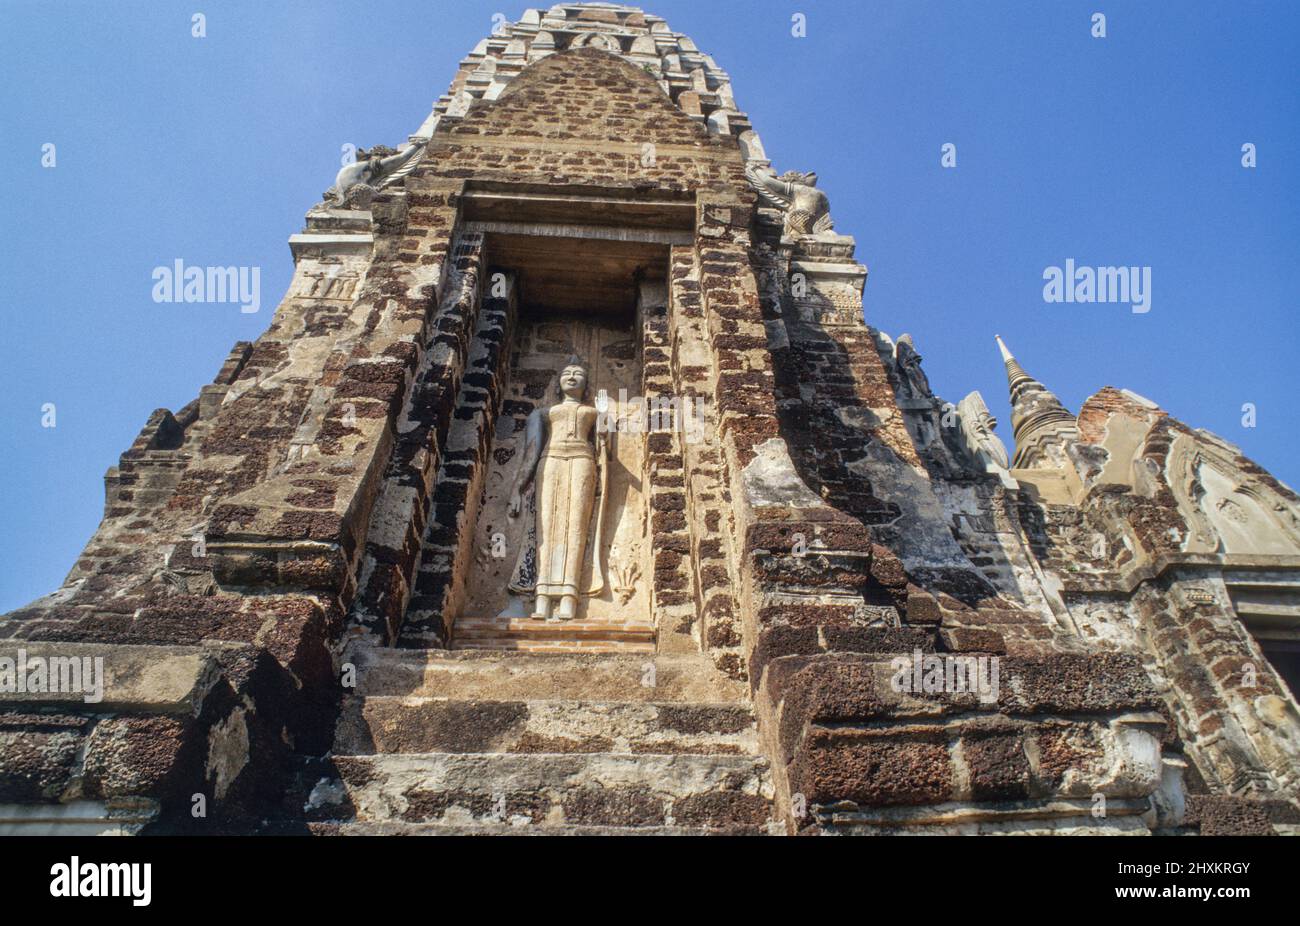 Une statue au temple Prang de Wat Phra si Sanphet à Ayutthaya. L'ancienne capitale de Siam a été conquise par une armée de Birmese en 1767, puis a été mise à sac et partiellement détruite. Il y a encore un sens de l'ancienne splendeur du grand temple. Banque D'Images